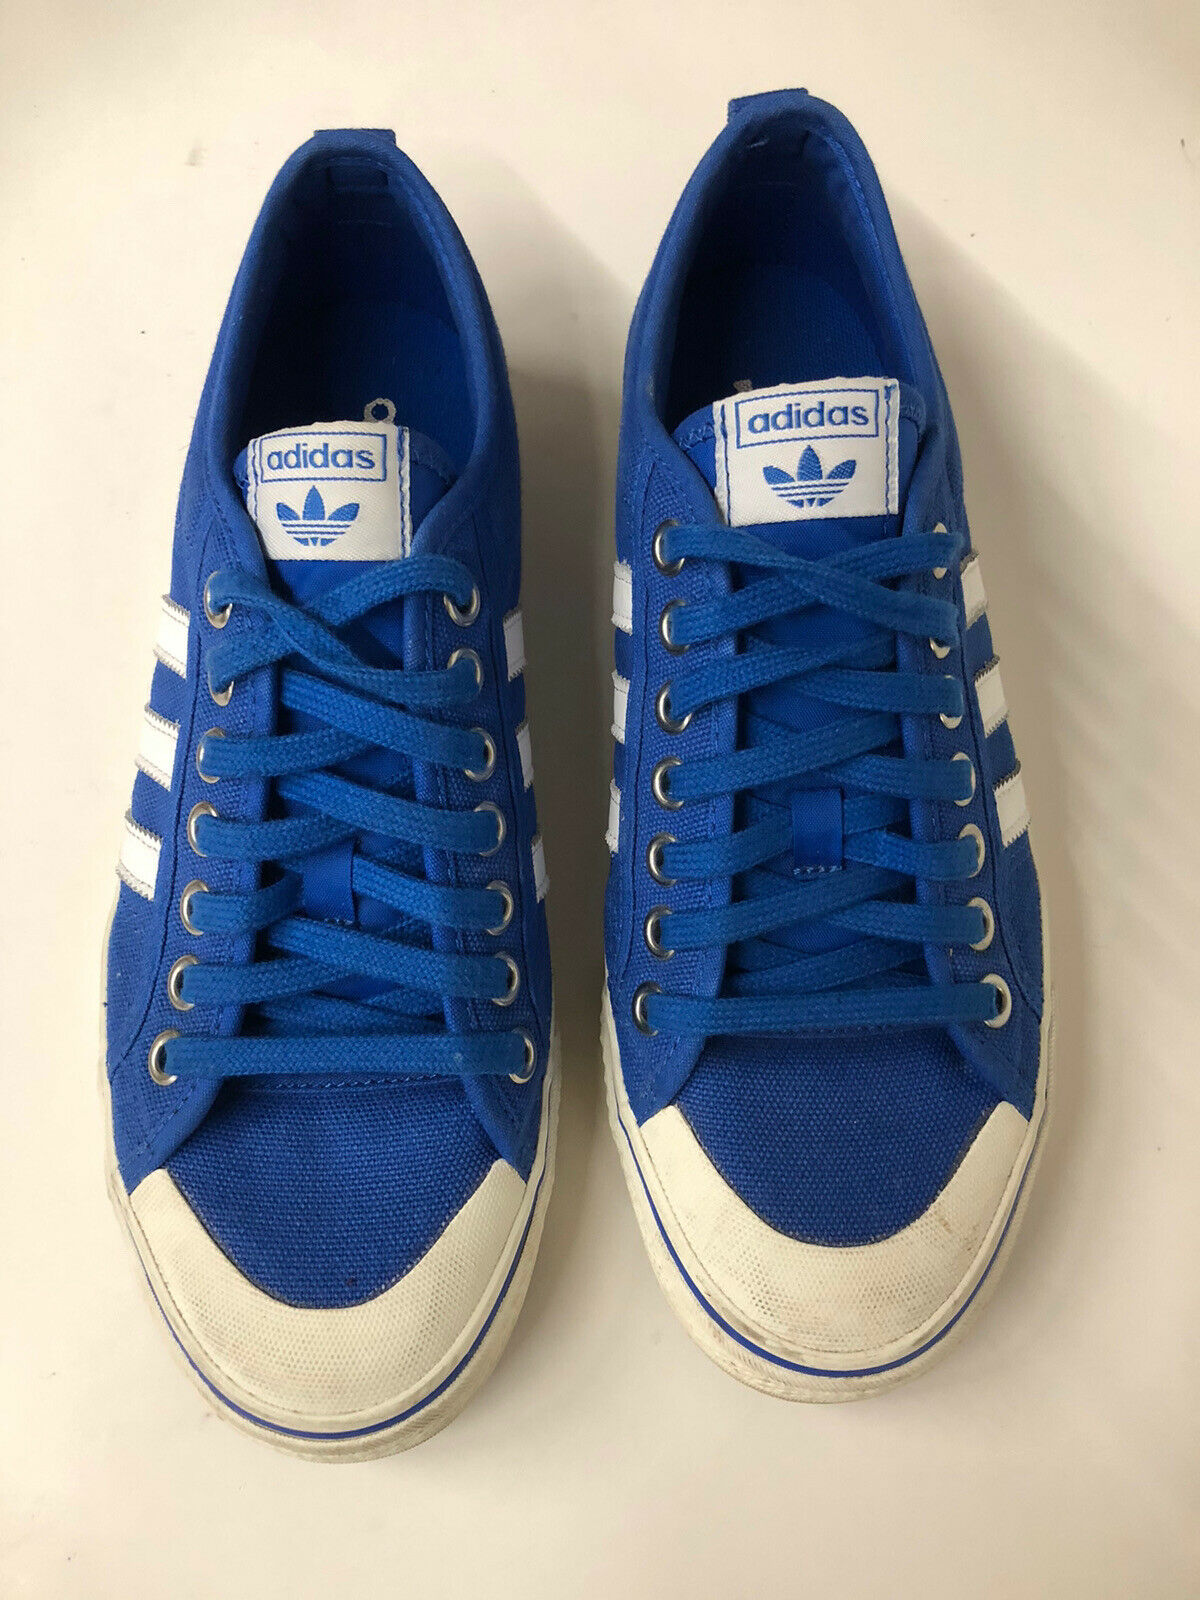 Adidas nizza platform canvas shoes blue w/ White Stripes Men’s 9